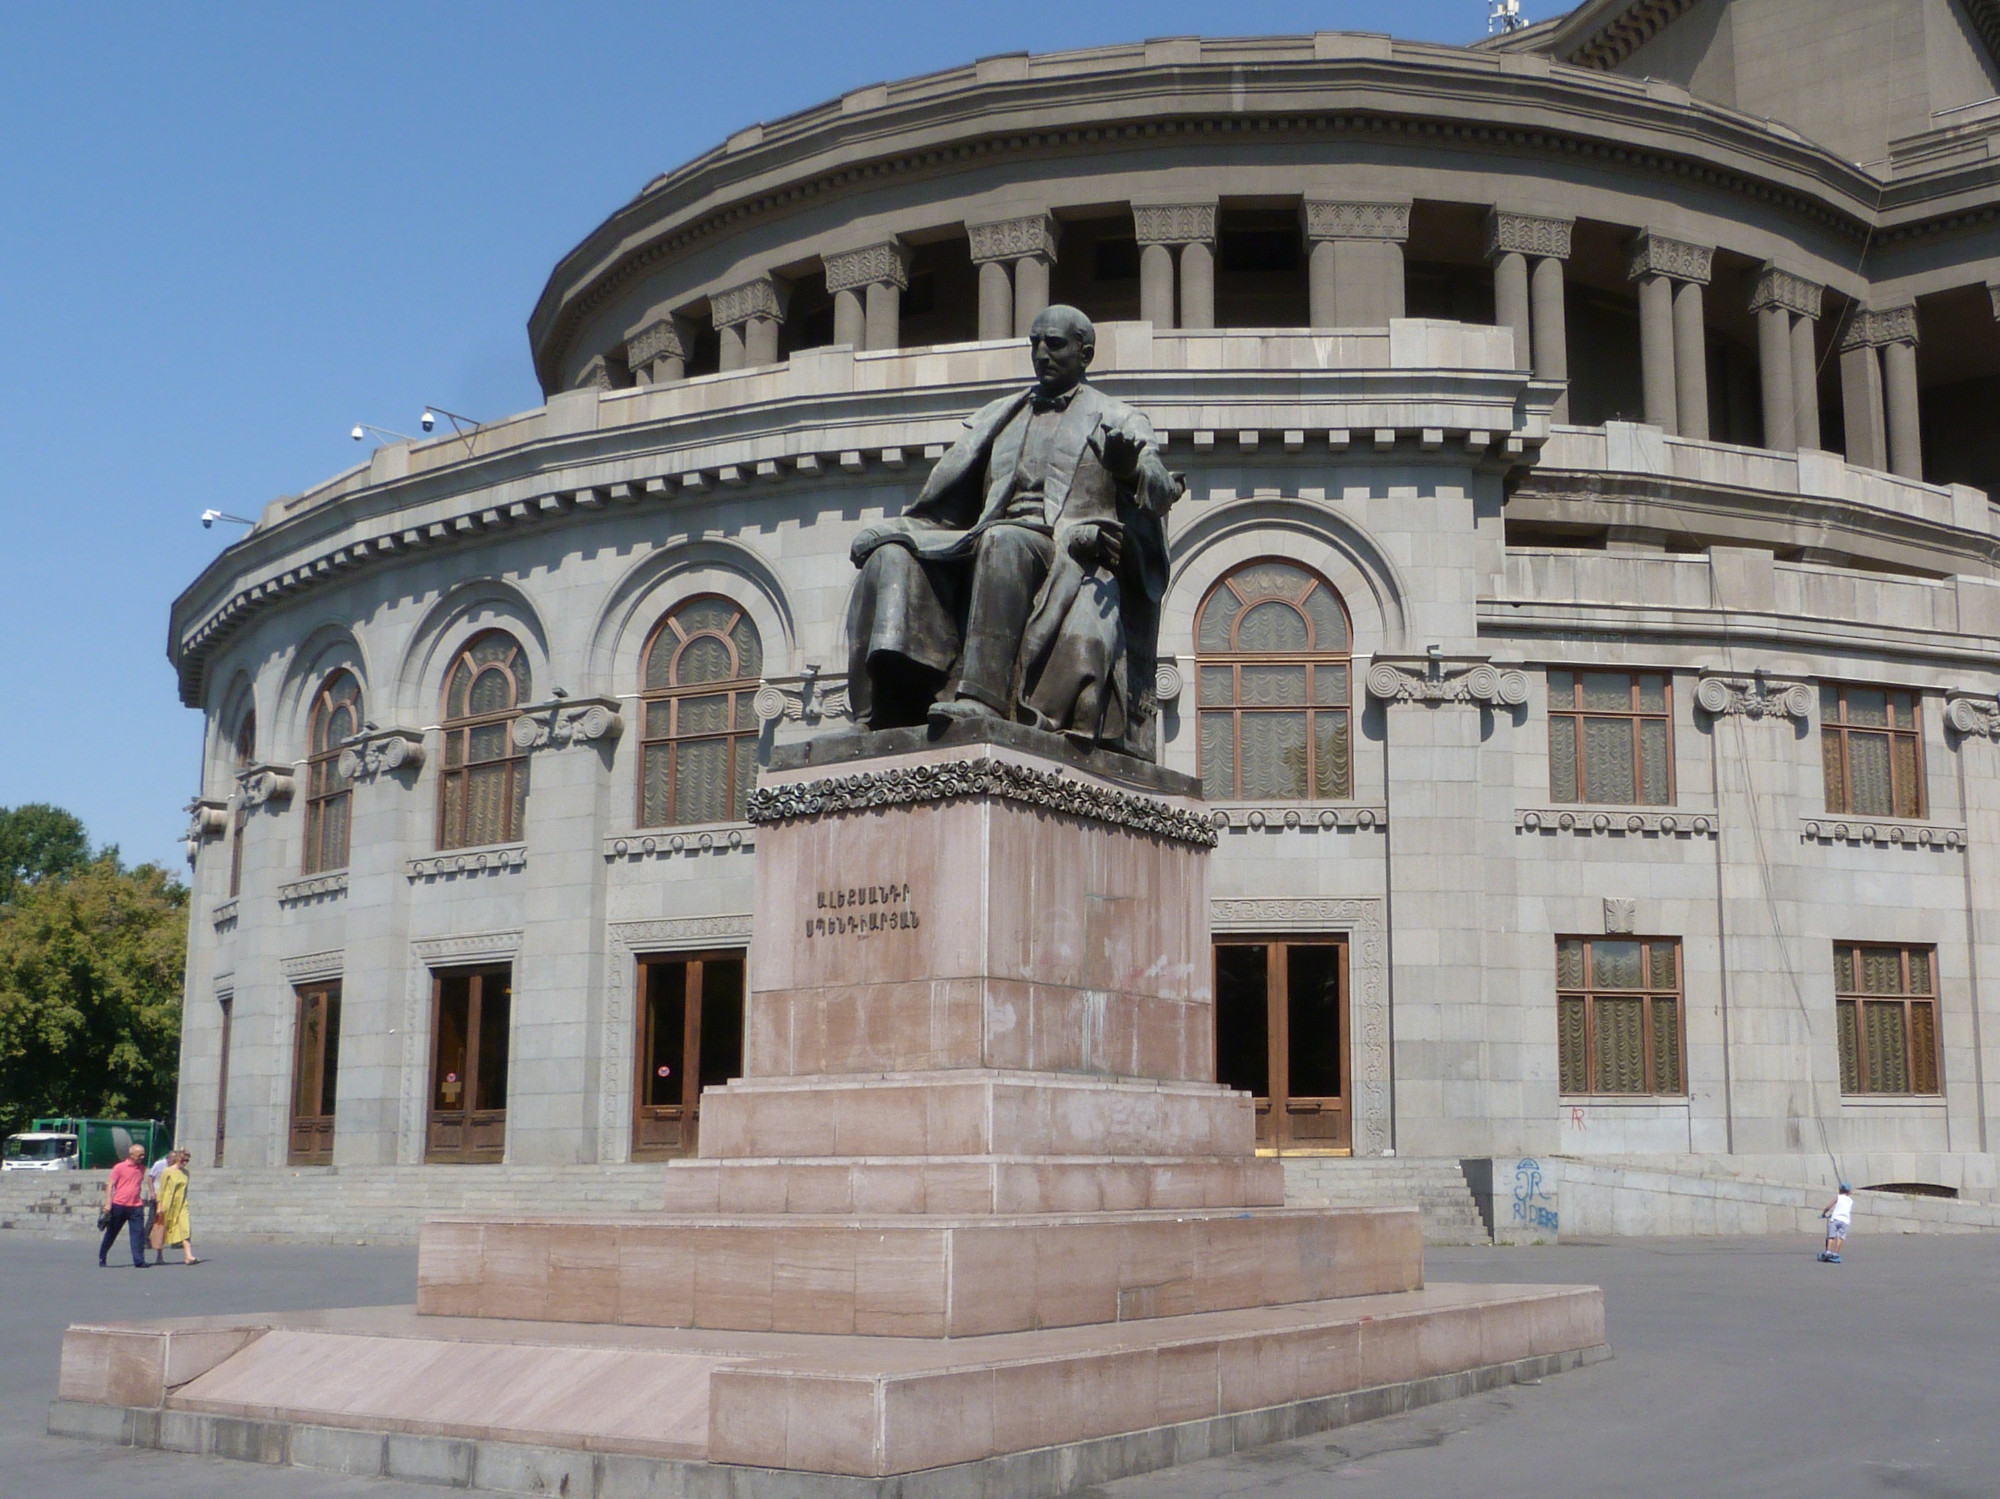 Opera House, Armenia